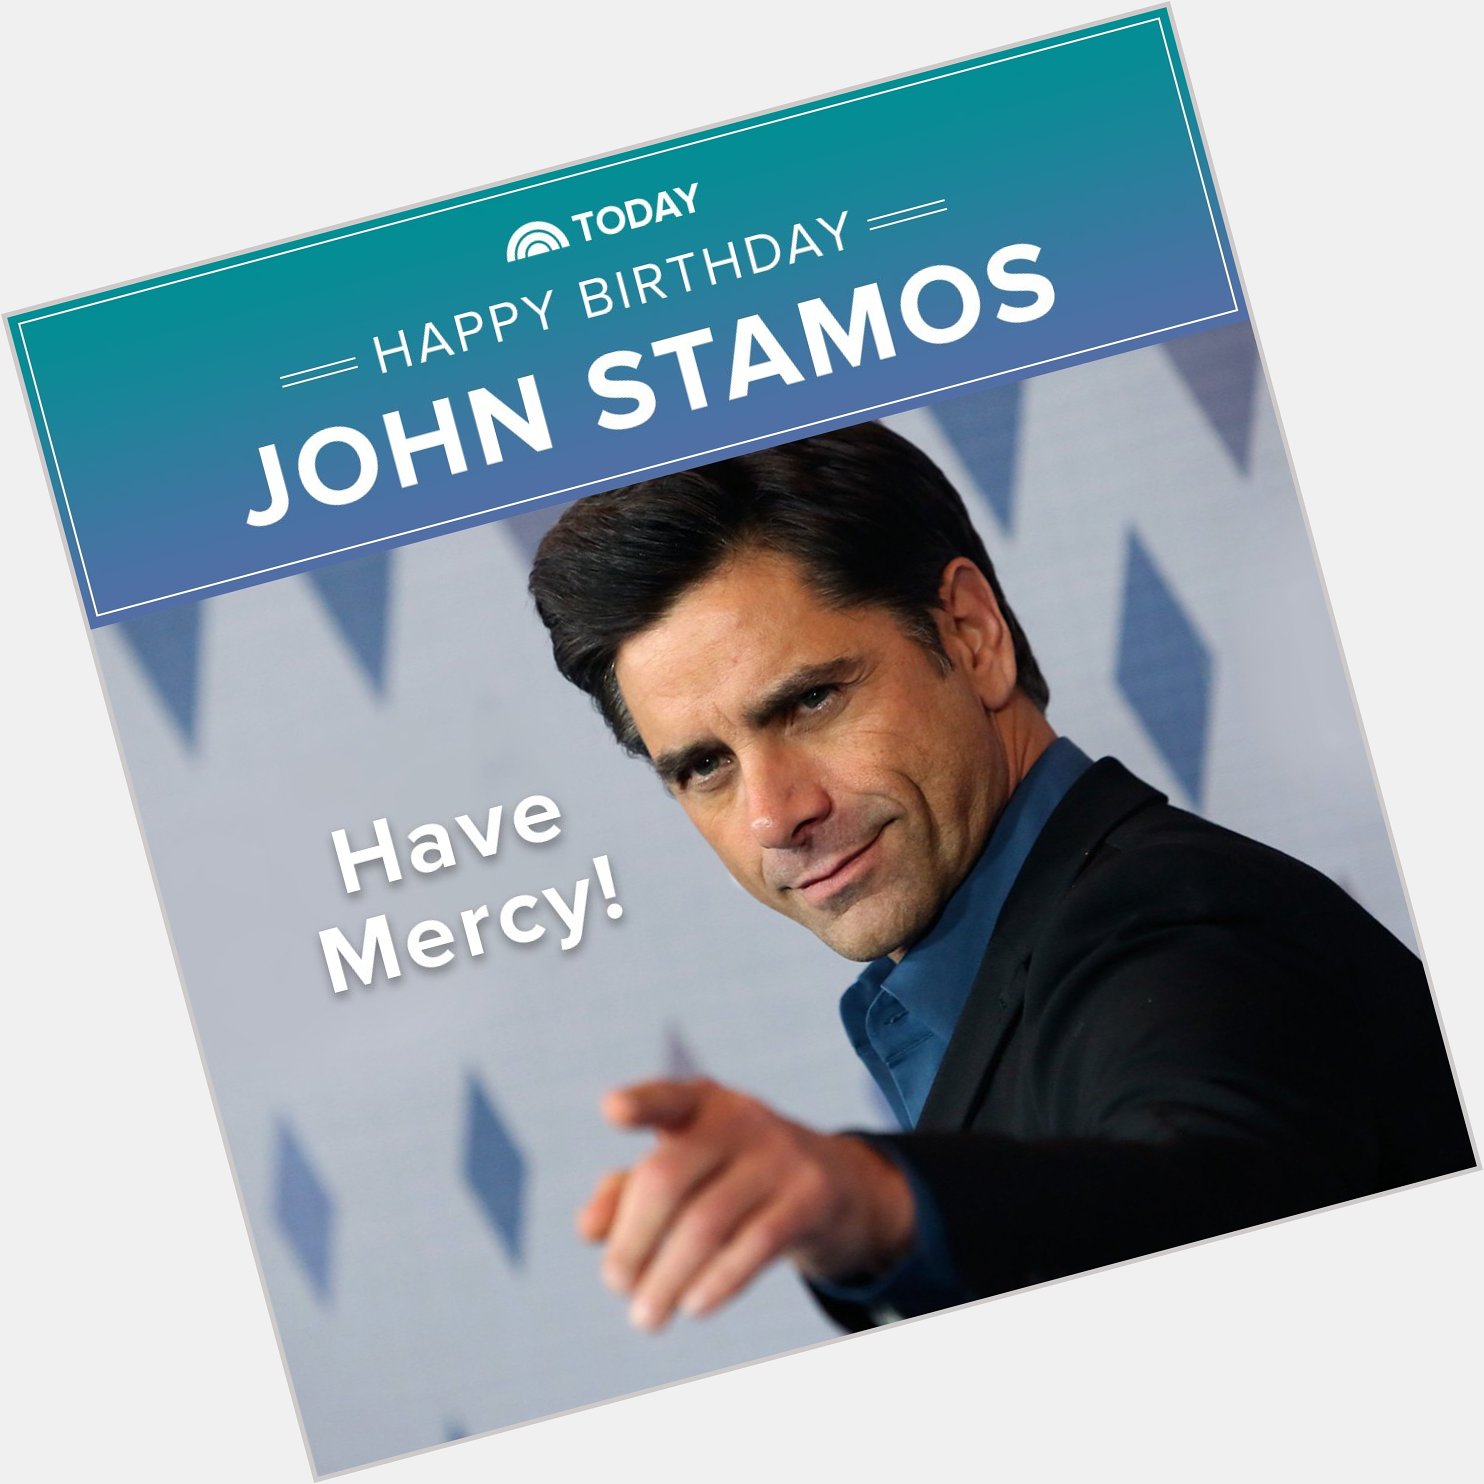 Have mercy! Happy 54th birthday, John Stamos!  